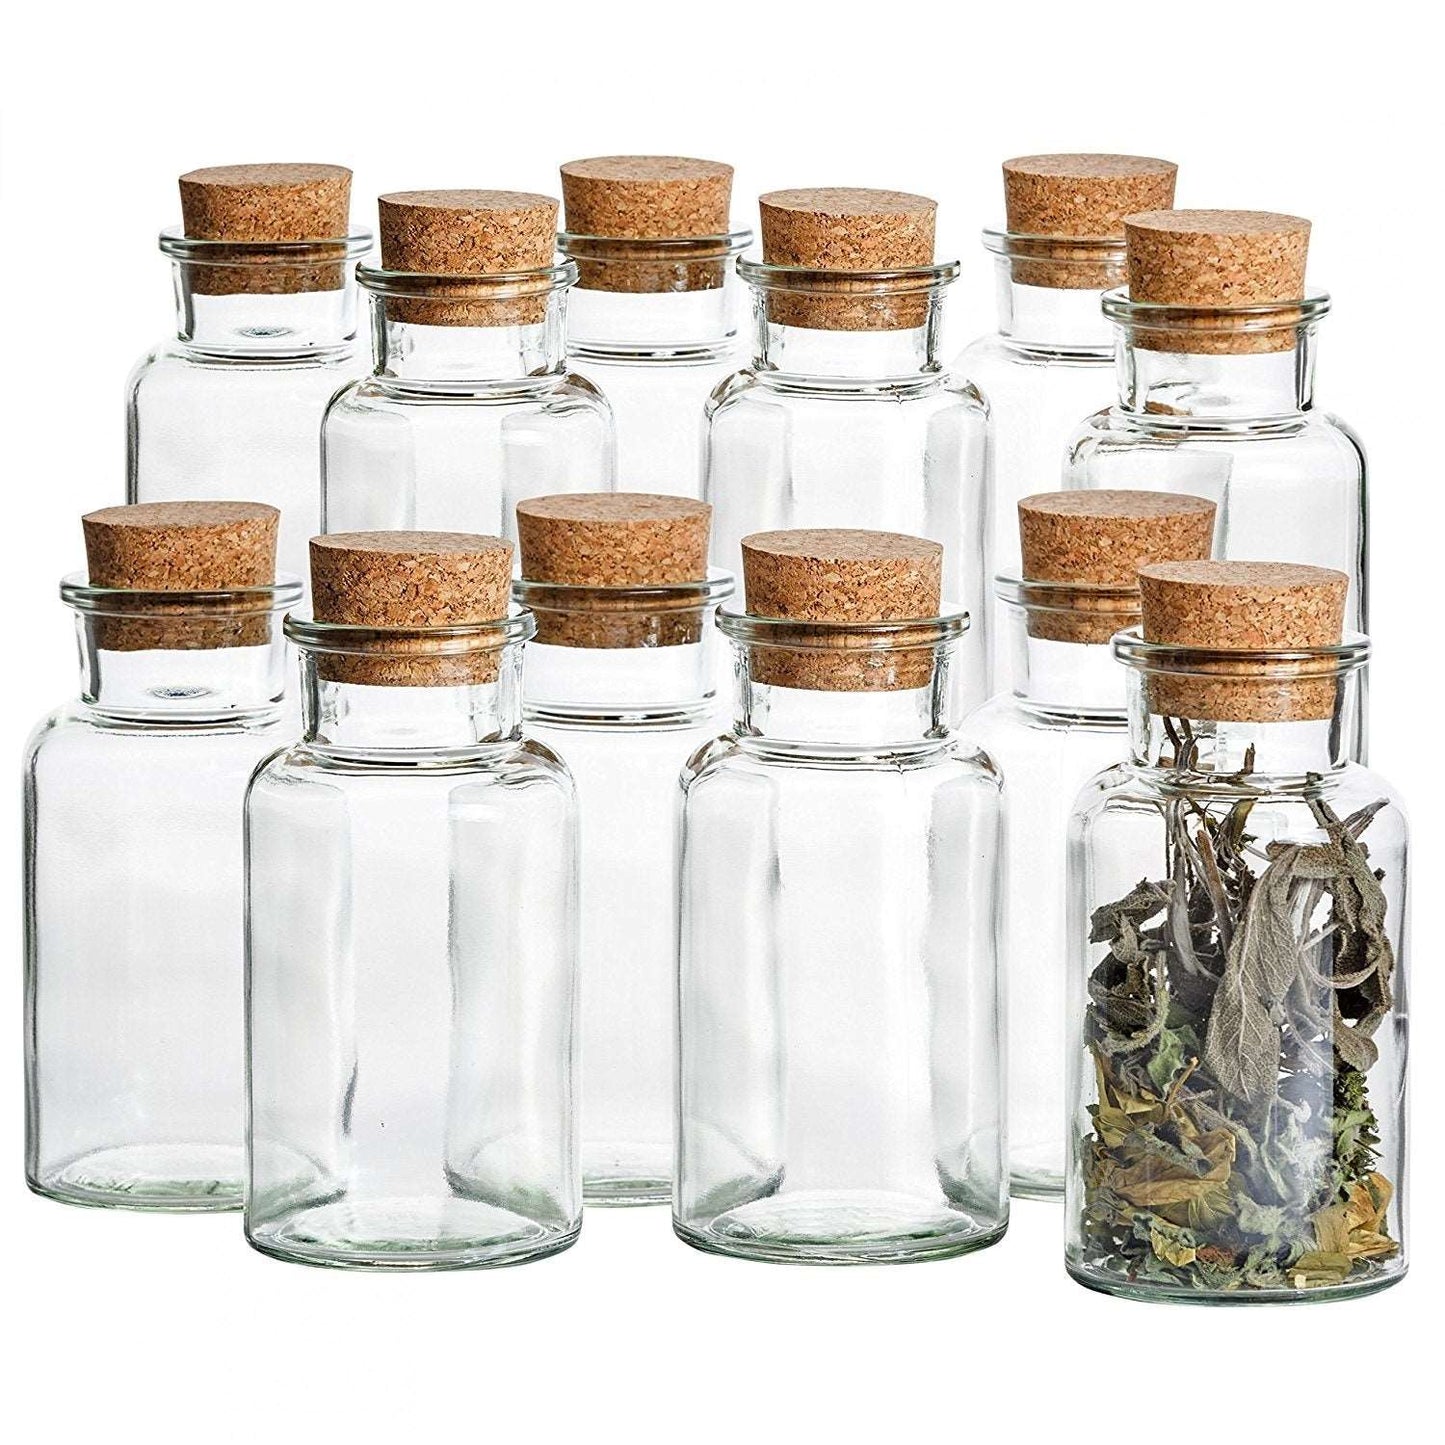 KitchenEnvy Apothecary Glass Bottle / Spice Jar (300ml) - KitchenEnvy